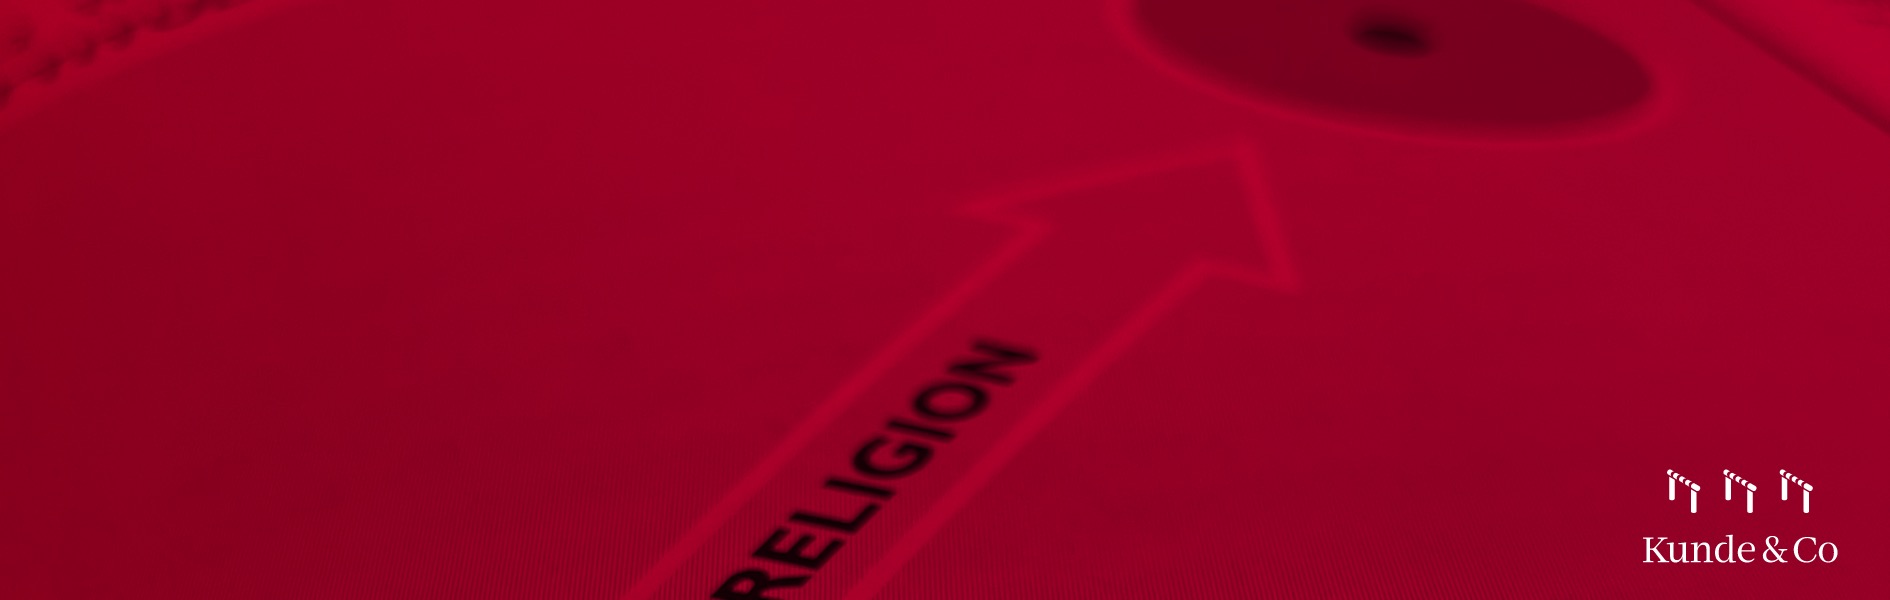 Corporate-religion-N4-banner.jpg